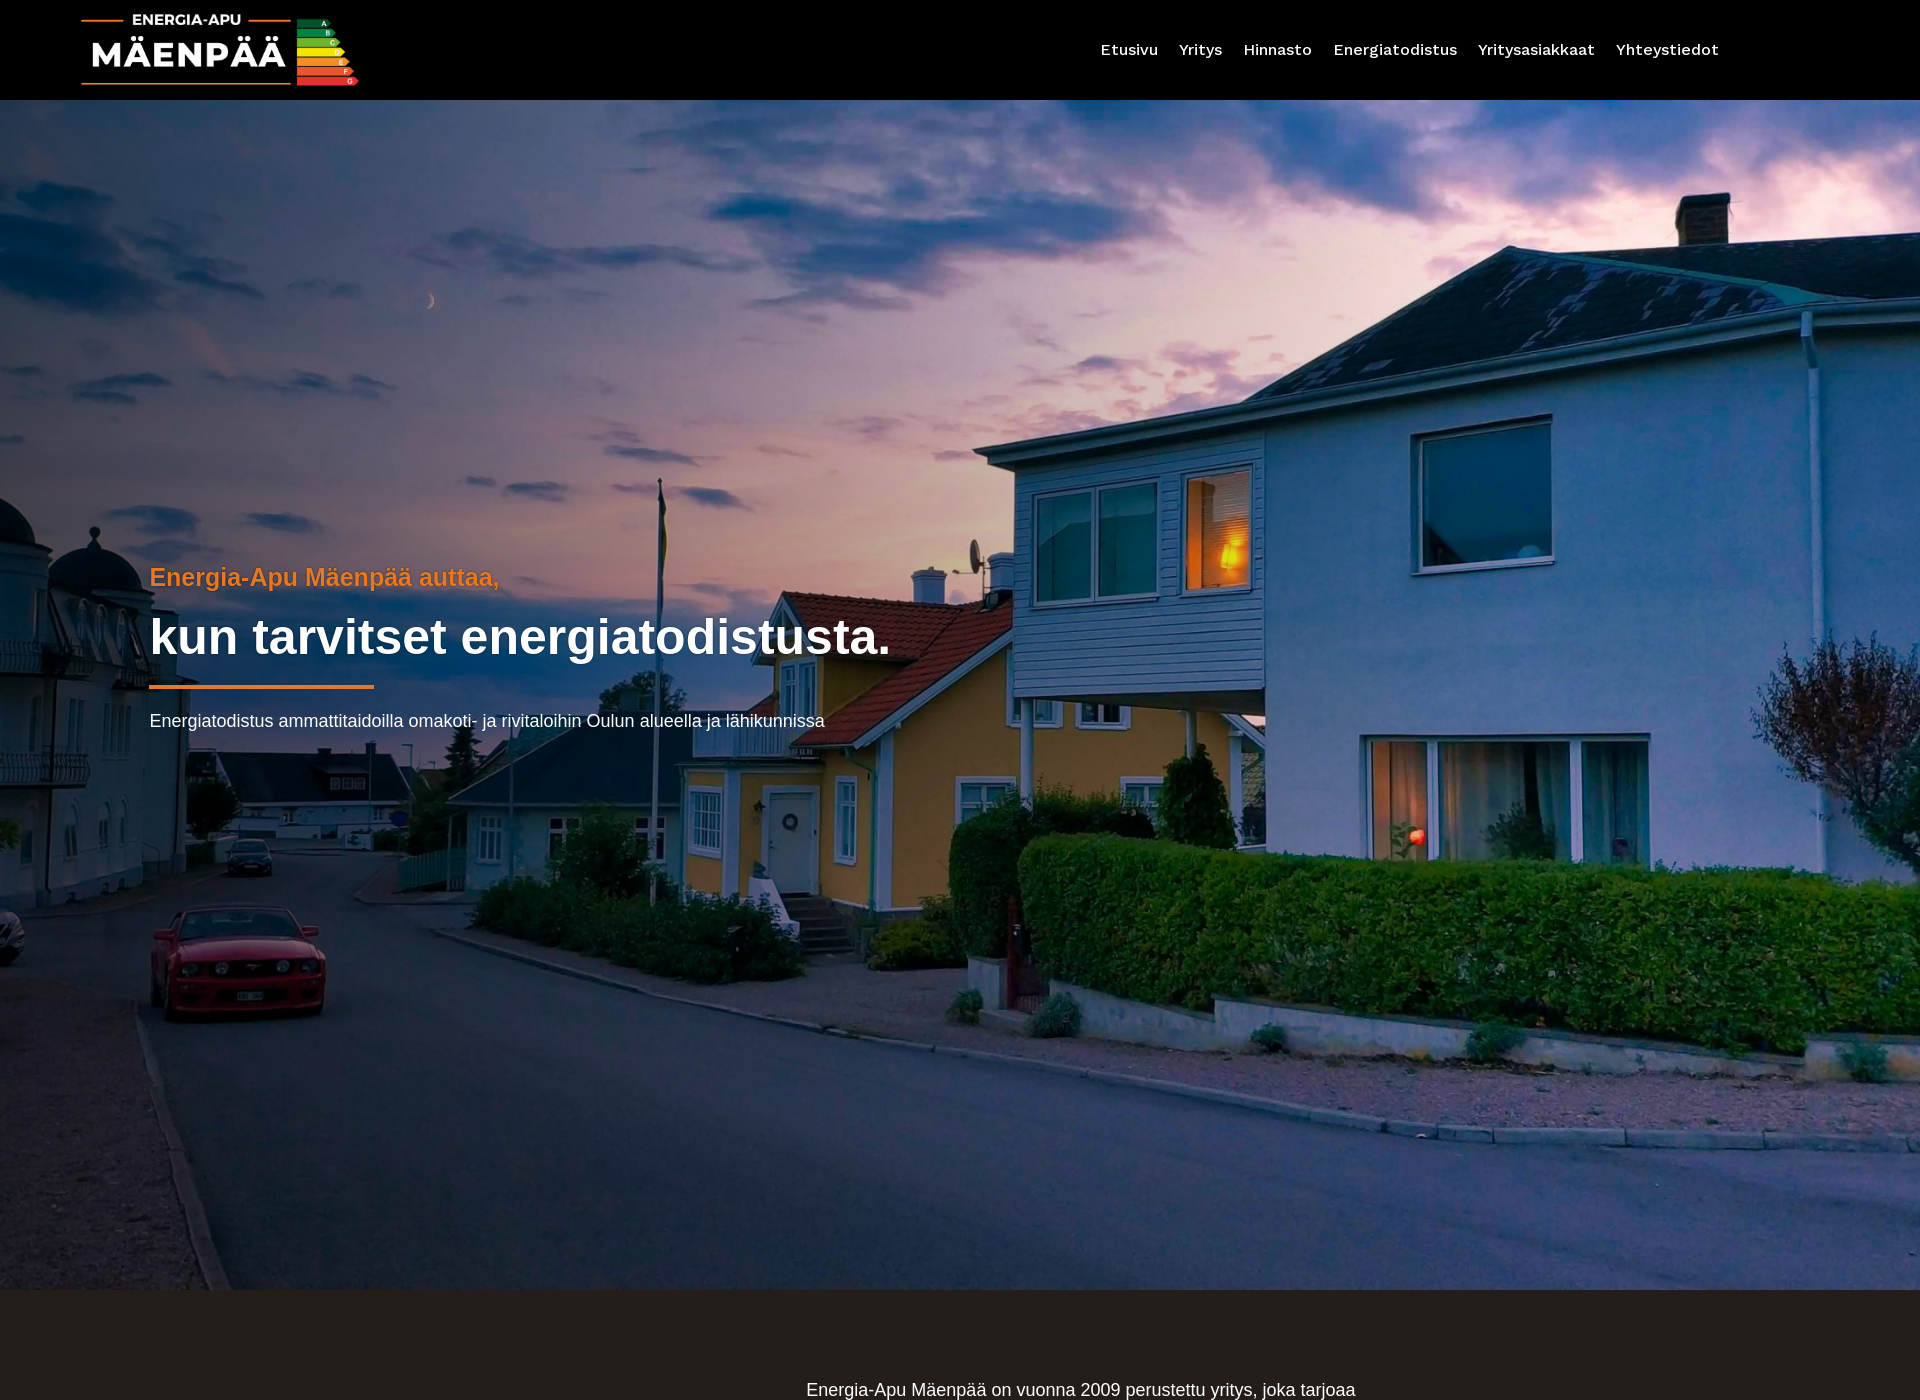 Skärmdump för energiaapumaenpaa.fi